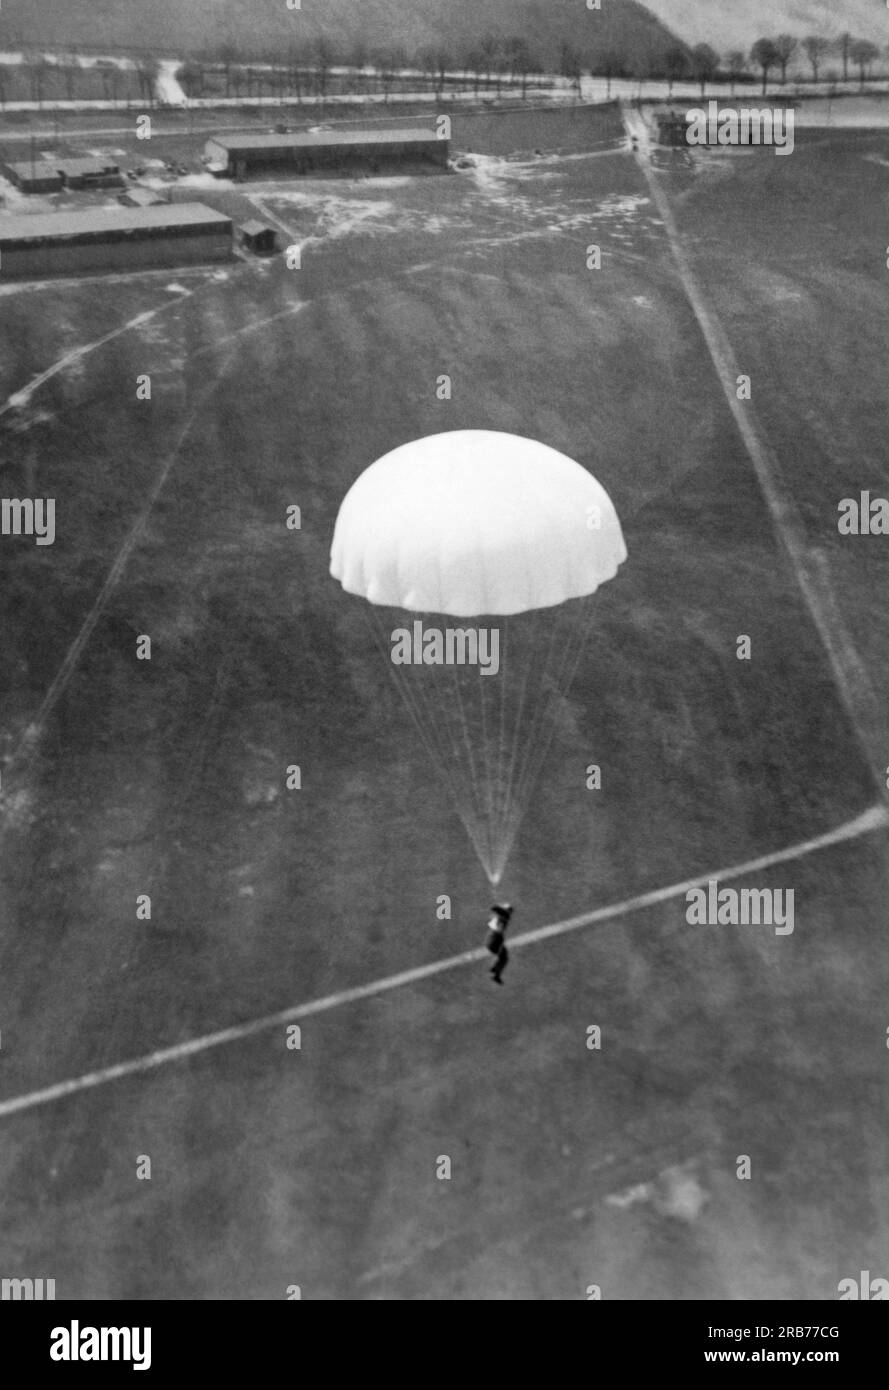 Deutschland: 24. Mai 1931 Willi Ruge ist bestrebt, die ersten Selbstporträts vom Fallschirm zu machen, wenn er aus einem Flugzeug springt. Hier, nachdem er mit dem Kopf zuerst aus dem Flugzeug gesprungen ist, hat sich sein Fallschirm vollständig geöffnet Stockfoto